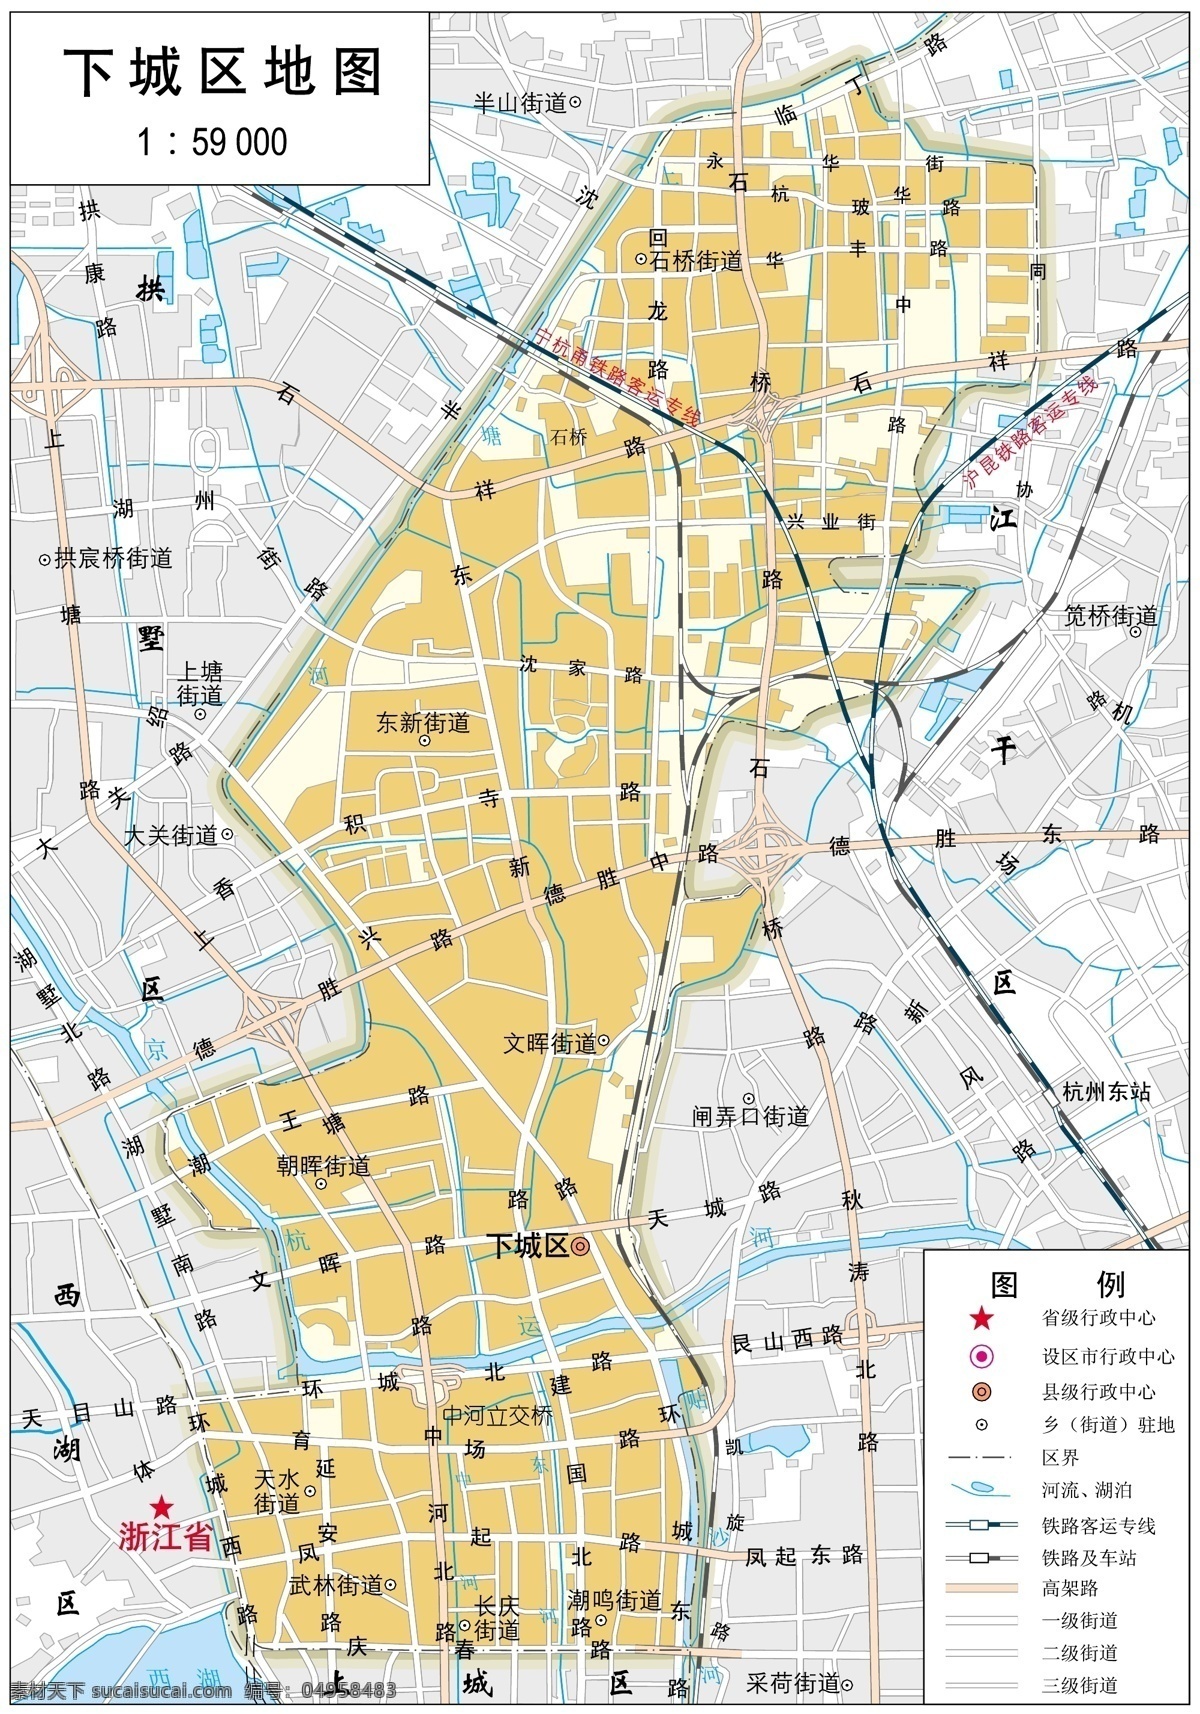 浙江 杭州市 下城区 标准 地图 32k 杭州市地图 标准地图 地图模板 杭州地图 下城区地图